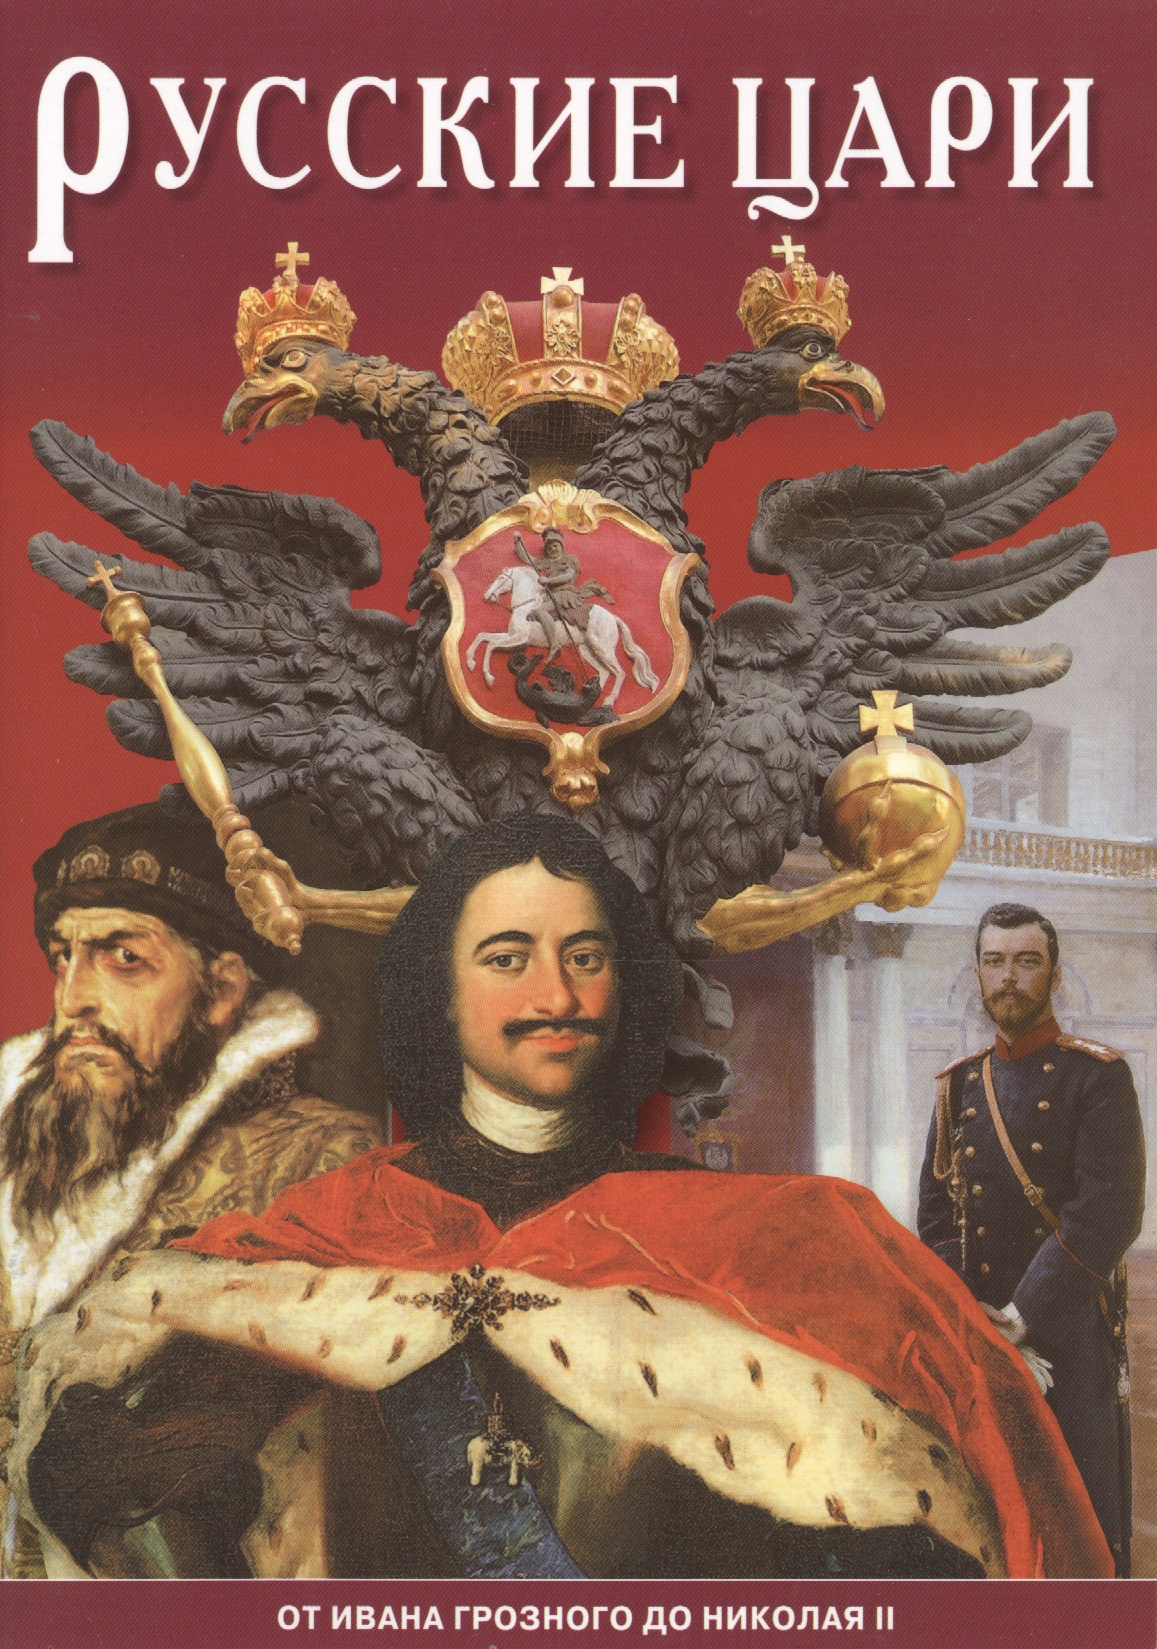 Минибуклет Русские цари 32 стр. русс. яз.